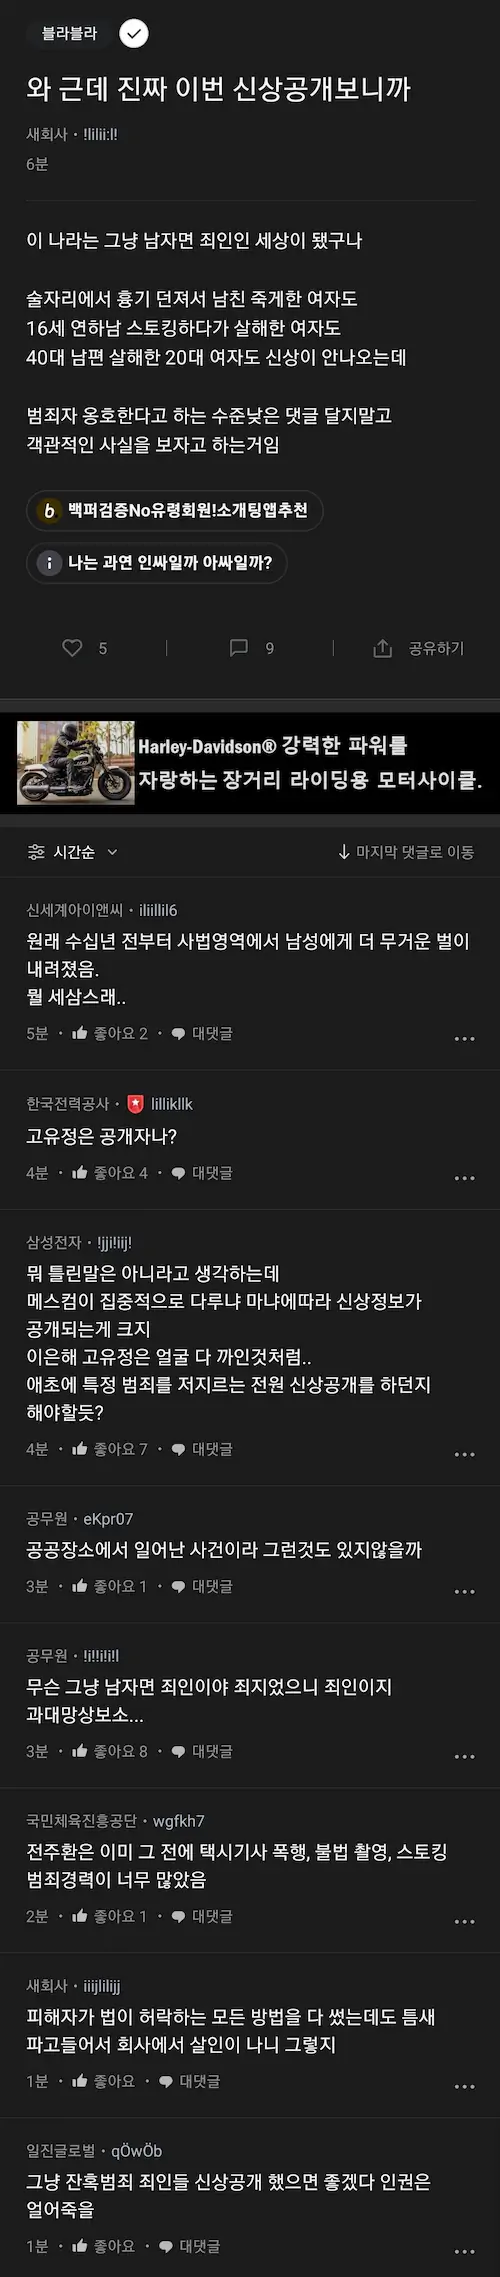 신당역 살인 피의자 신상 공개 블라인드 반응